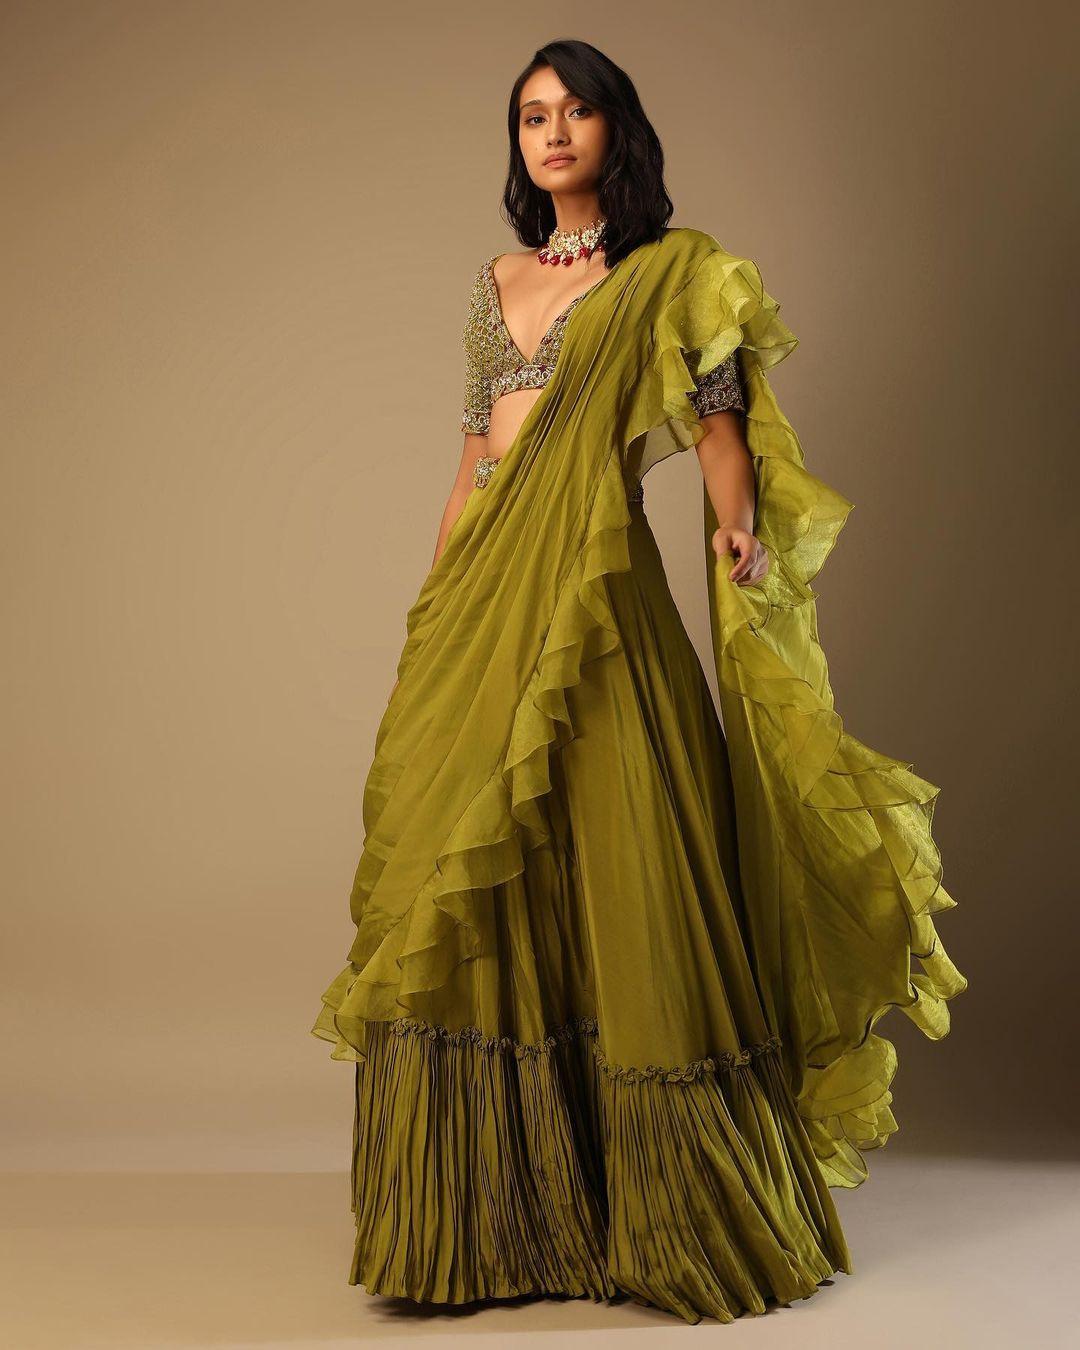 lehenga style saree | Indian Wedding Saree